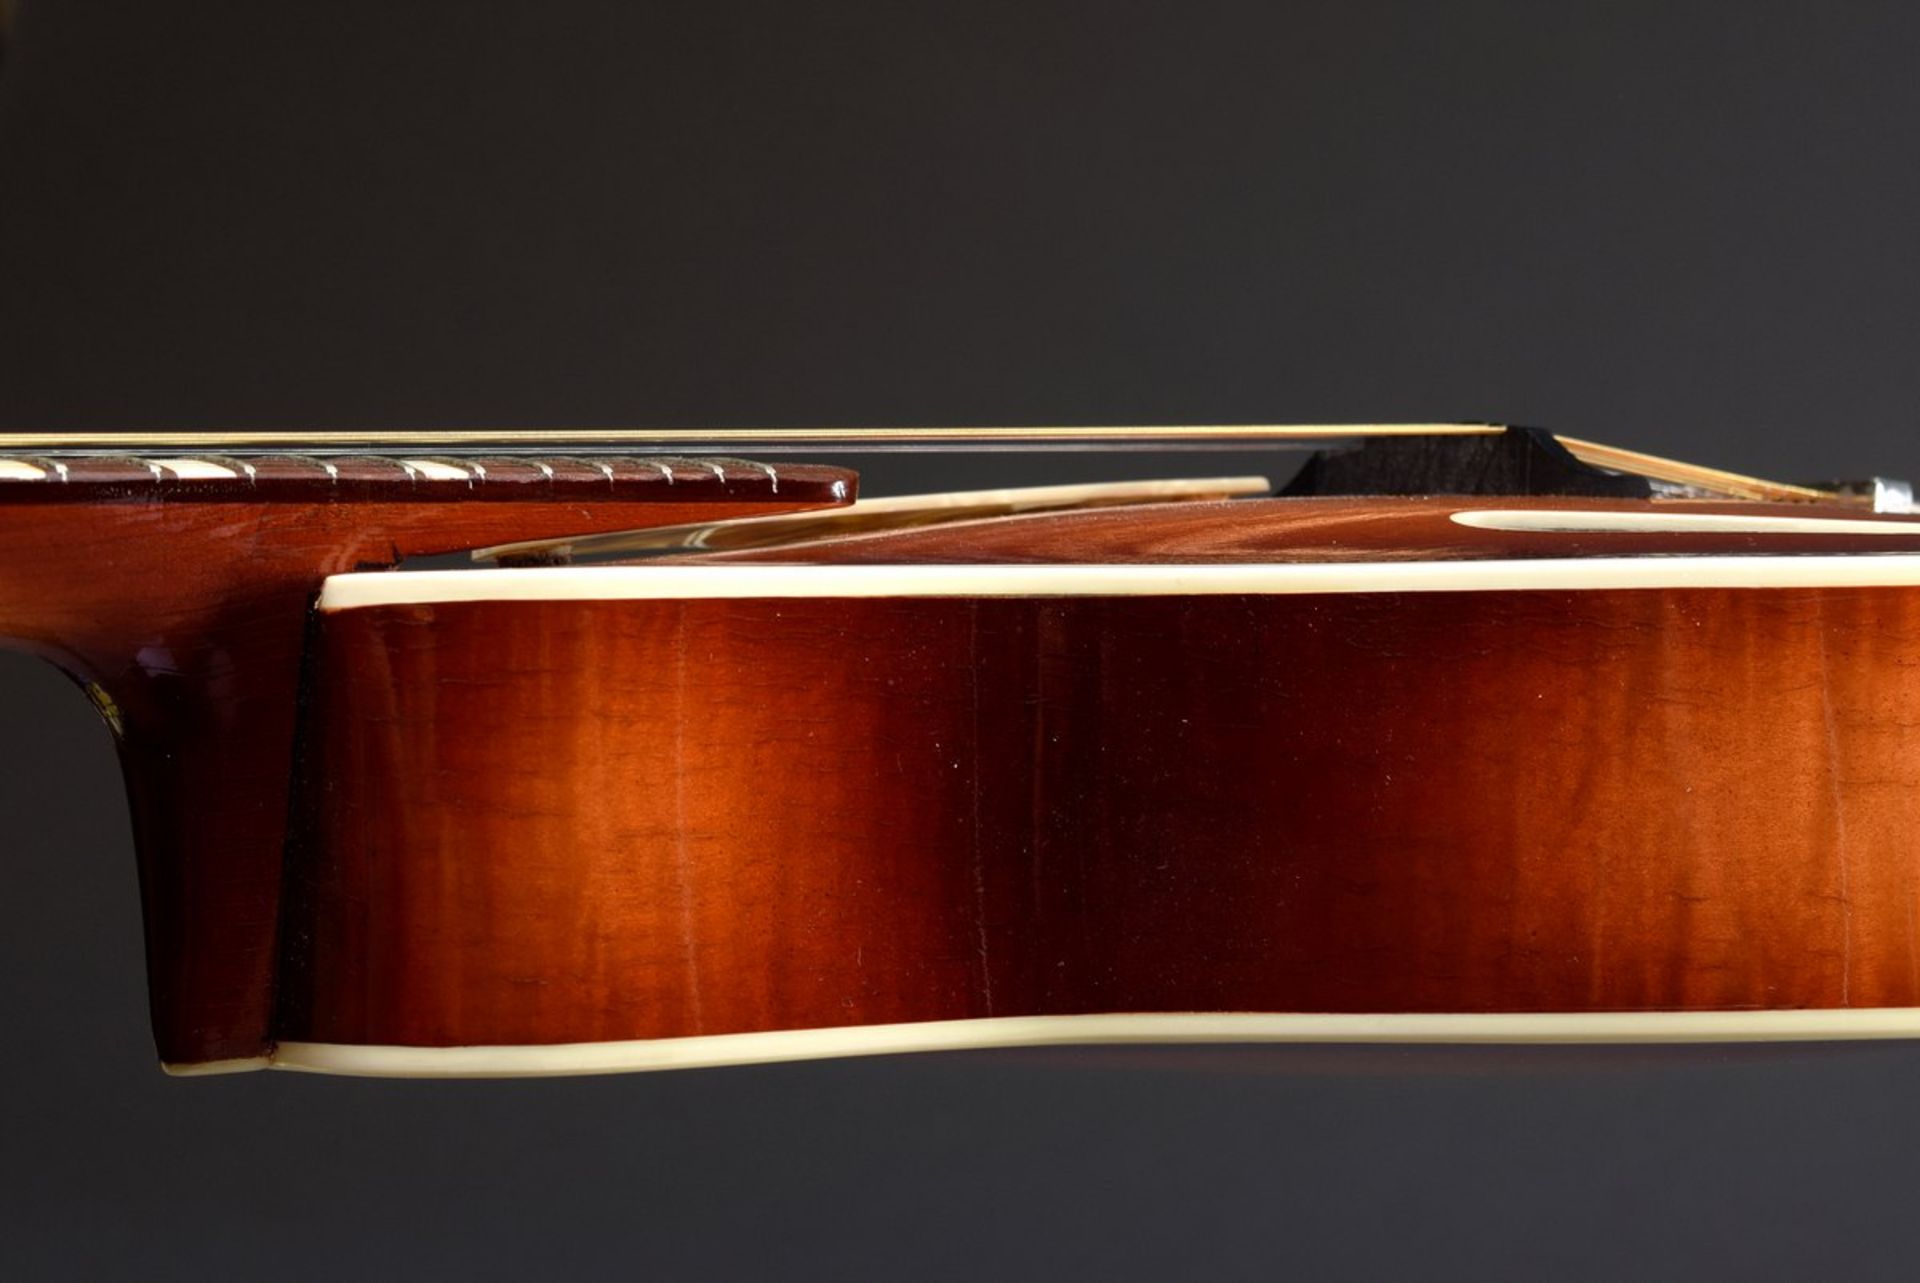 Jazz Mandoline "Cat Eye" von Höfner, Modell 542, um 1950/60, Korpuslänge 33cm, Gesamtlänge 63,5cm, - Bild 8 aus 10